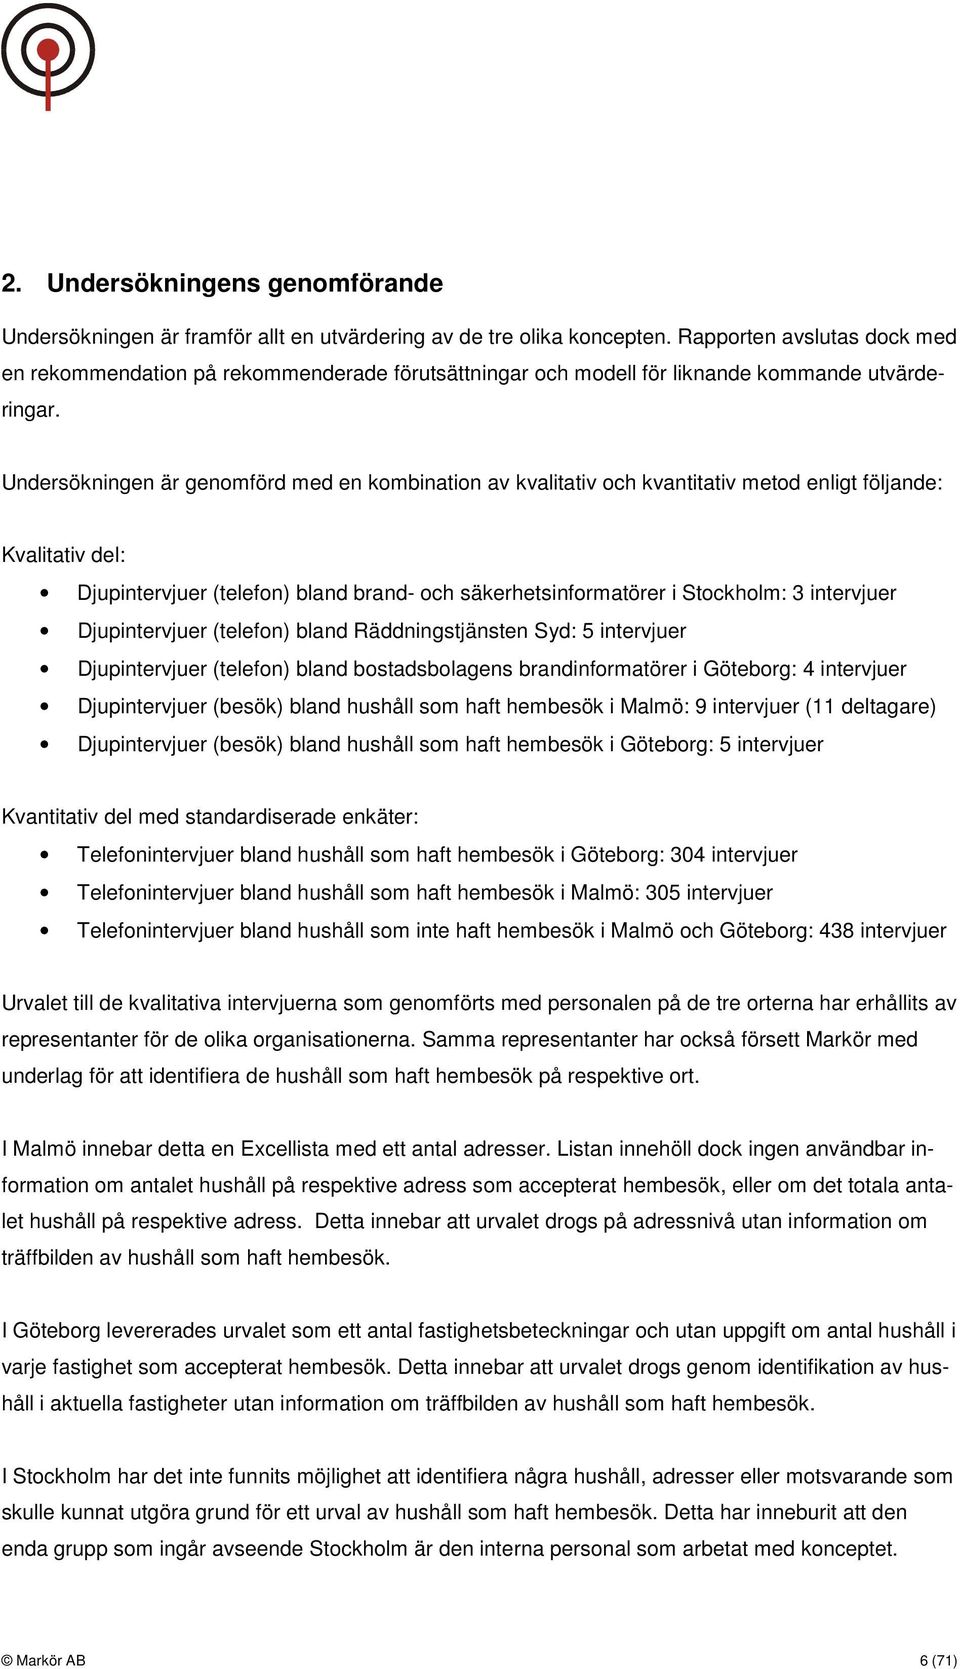 Undersökningen är genomförd med en kombination av kvalitativ och kvantitativ metod enligt följande: Kvalitativ del: Djupintervjuer (telefon) bland brand- och säkerhetsinformatörer i Stockholm: 3